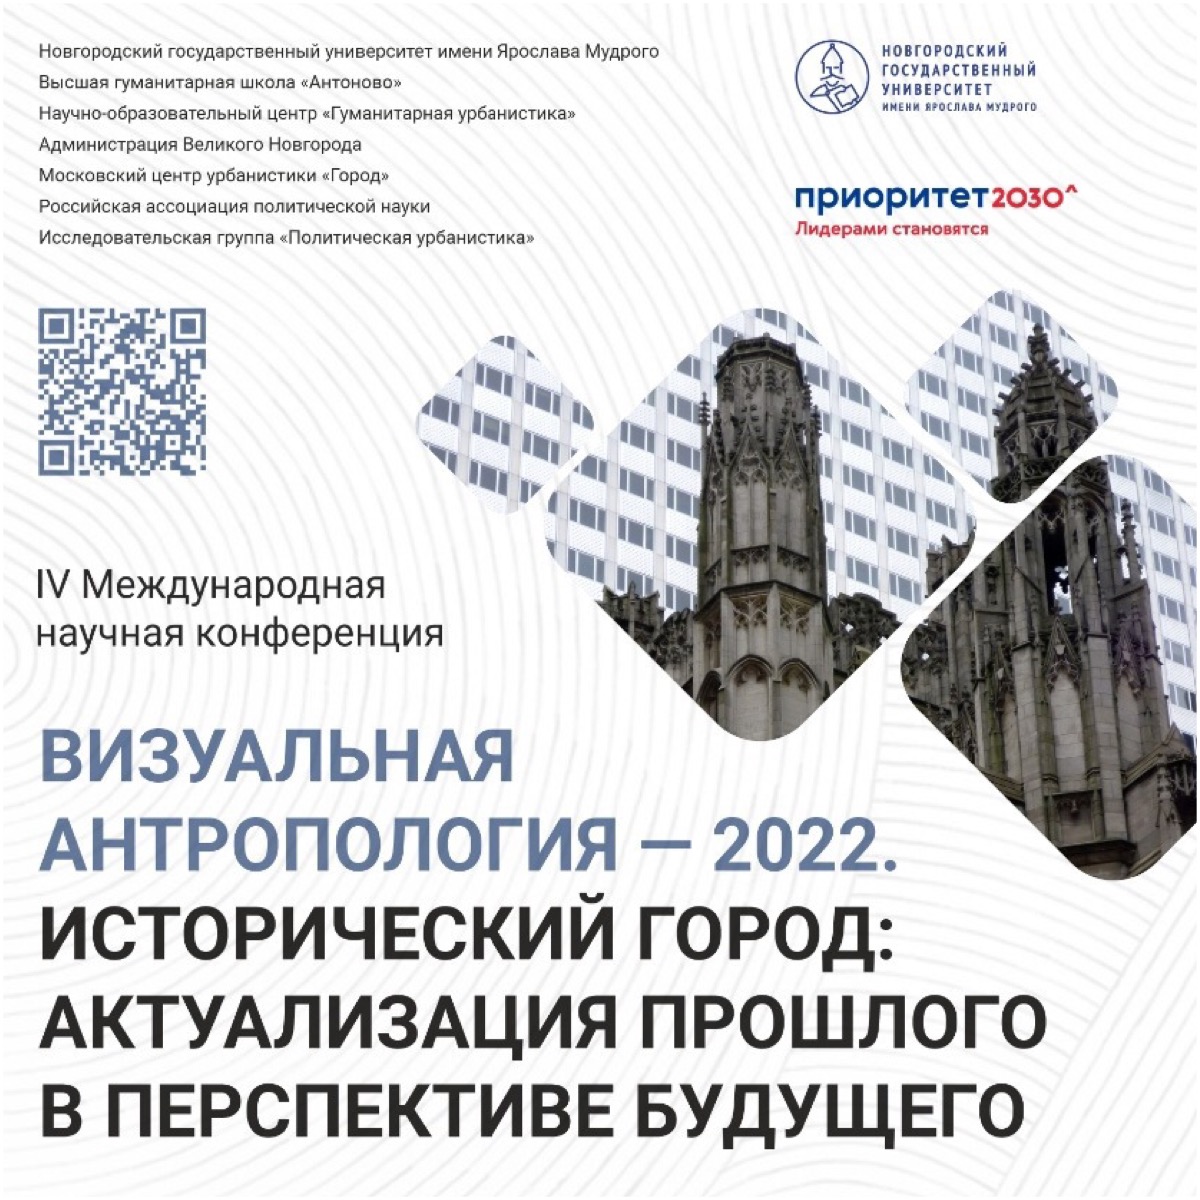 И.П. Кулакова выступила с докладом на конференции "Визуальная антропология – 2022"